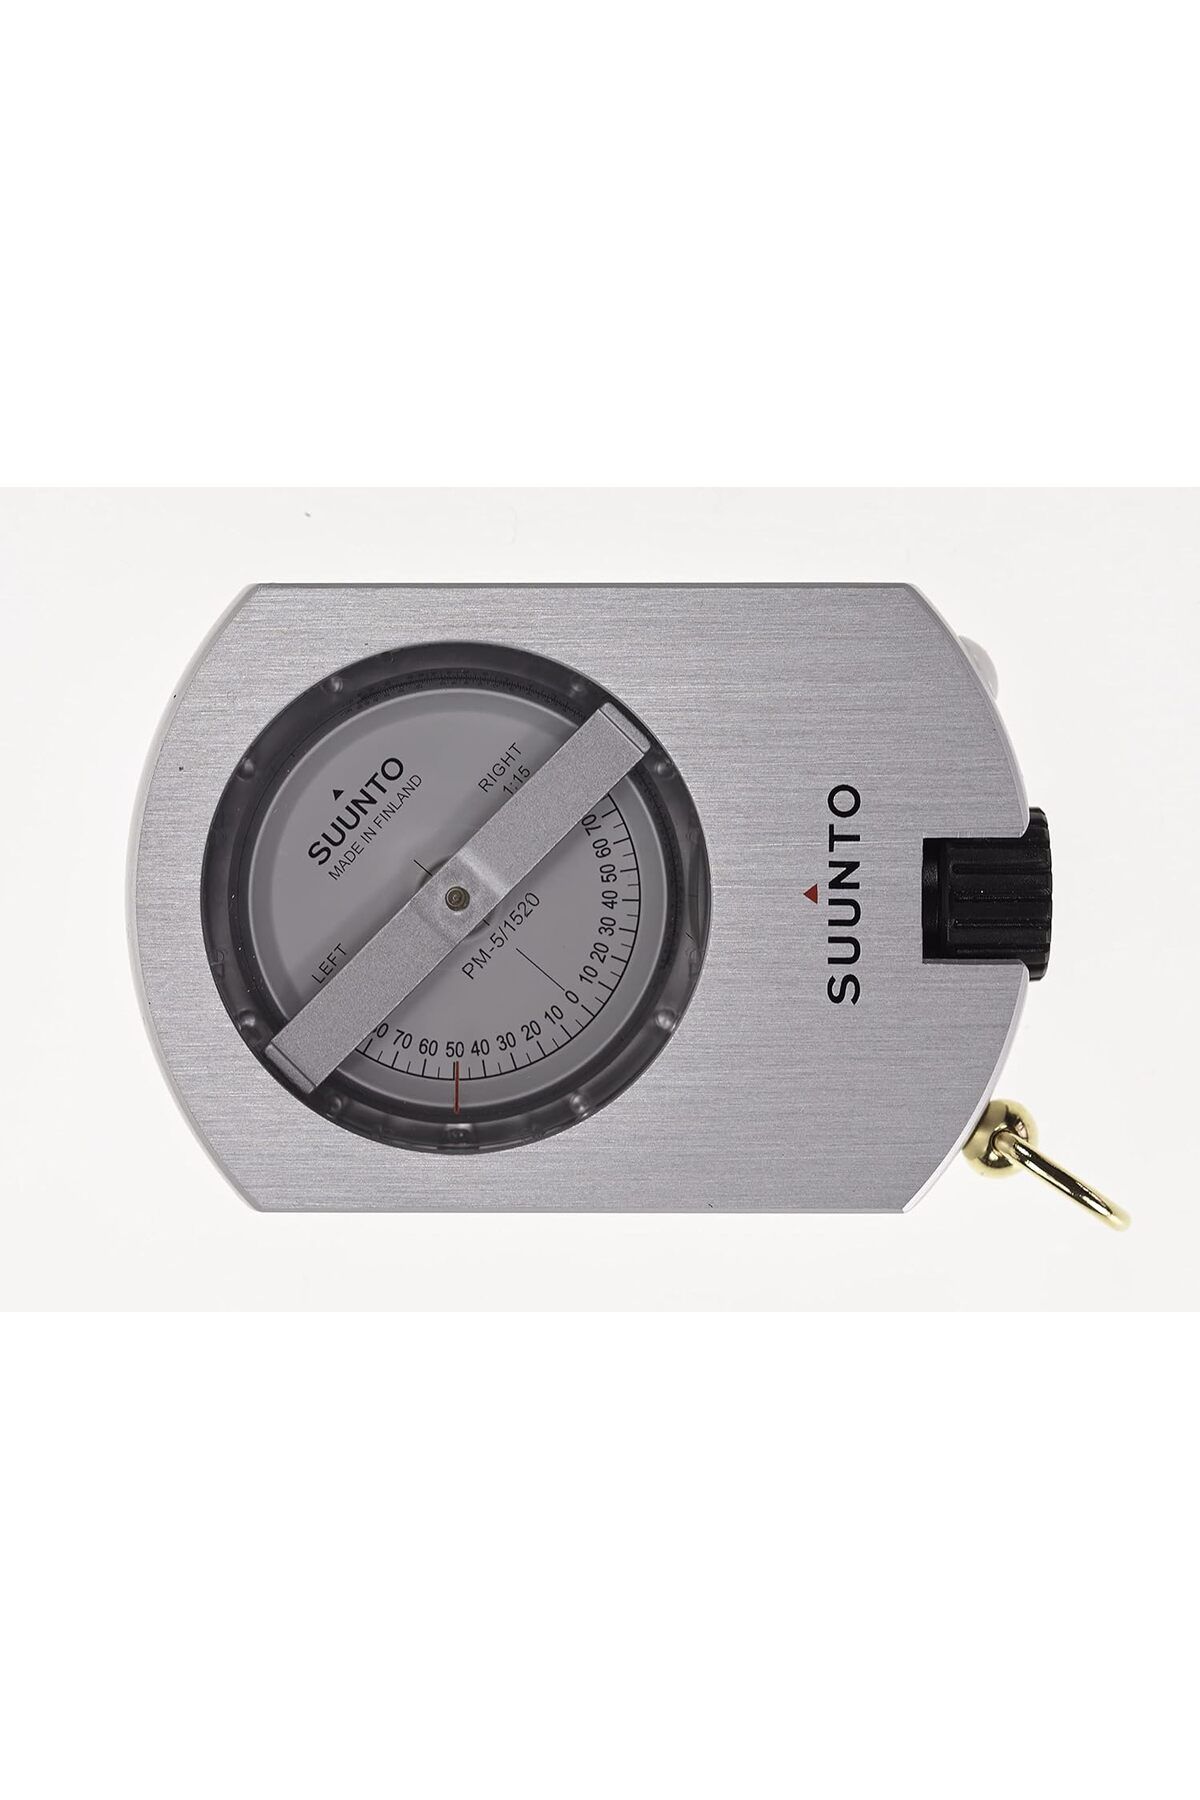 Suunto PM-5/360 PC Klinometre